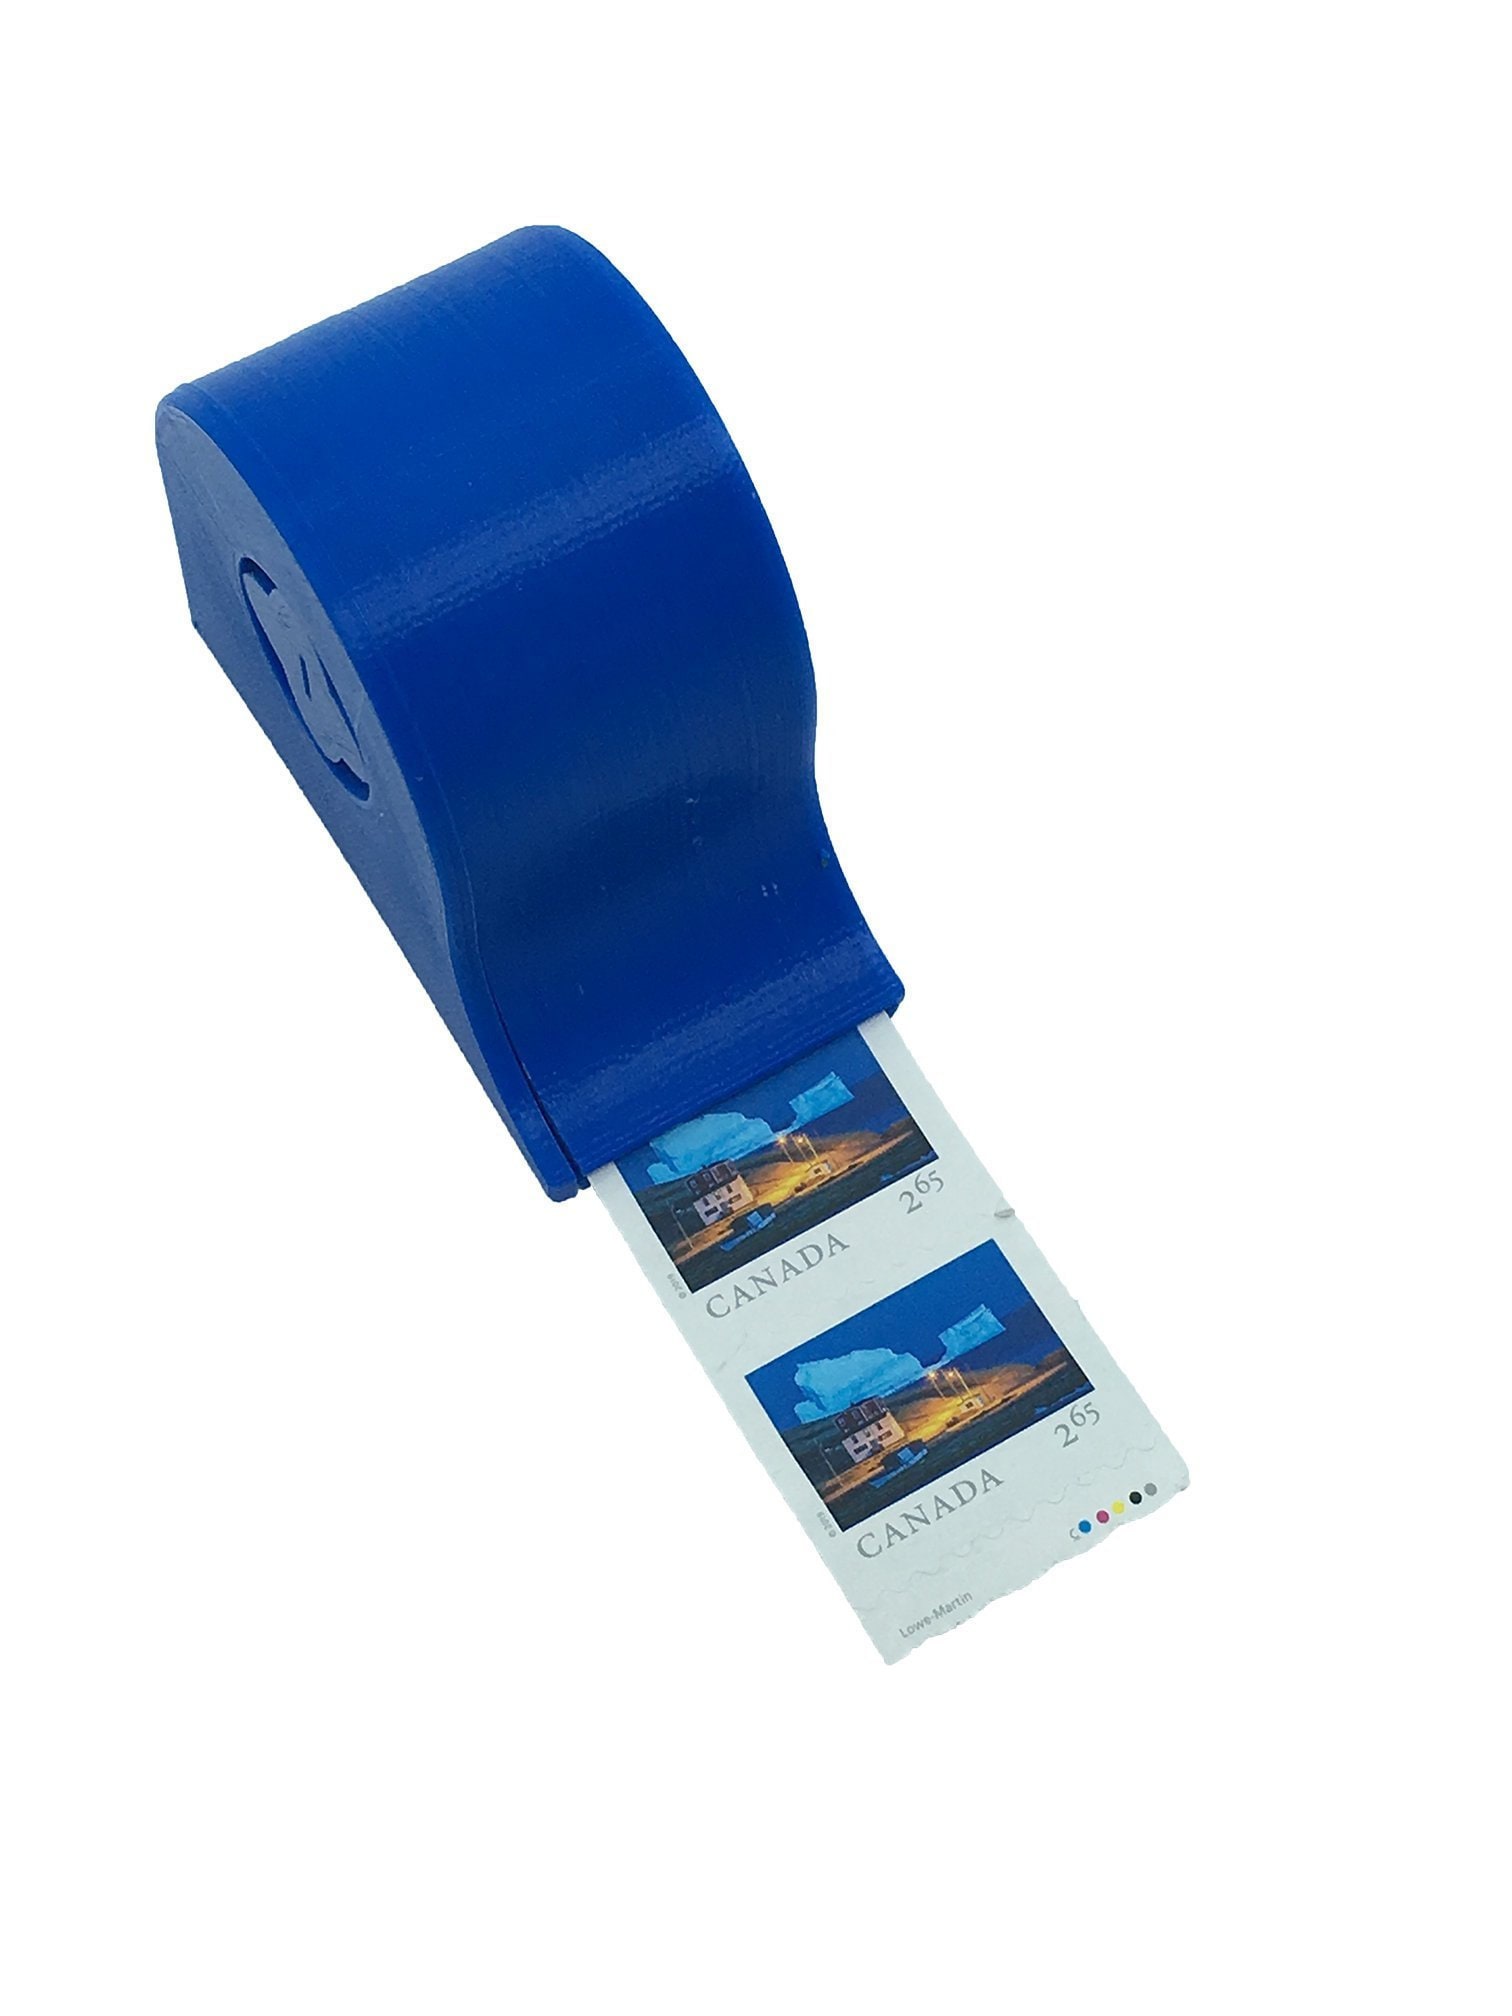 POSTAGE STAMP DISPENSER Applicator Affixer Coil / Roll of 100 Stamps Holder  $9.99 - PicClick